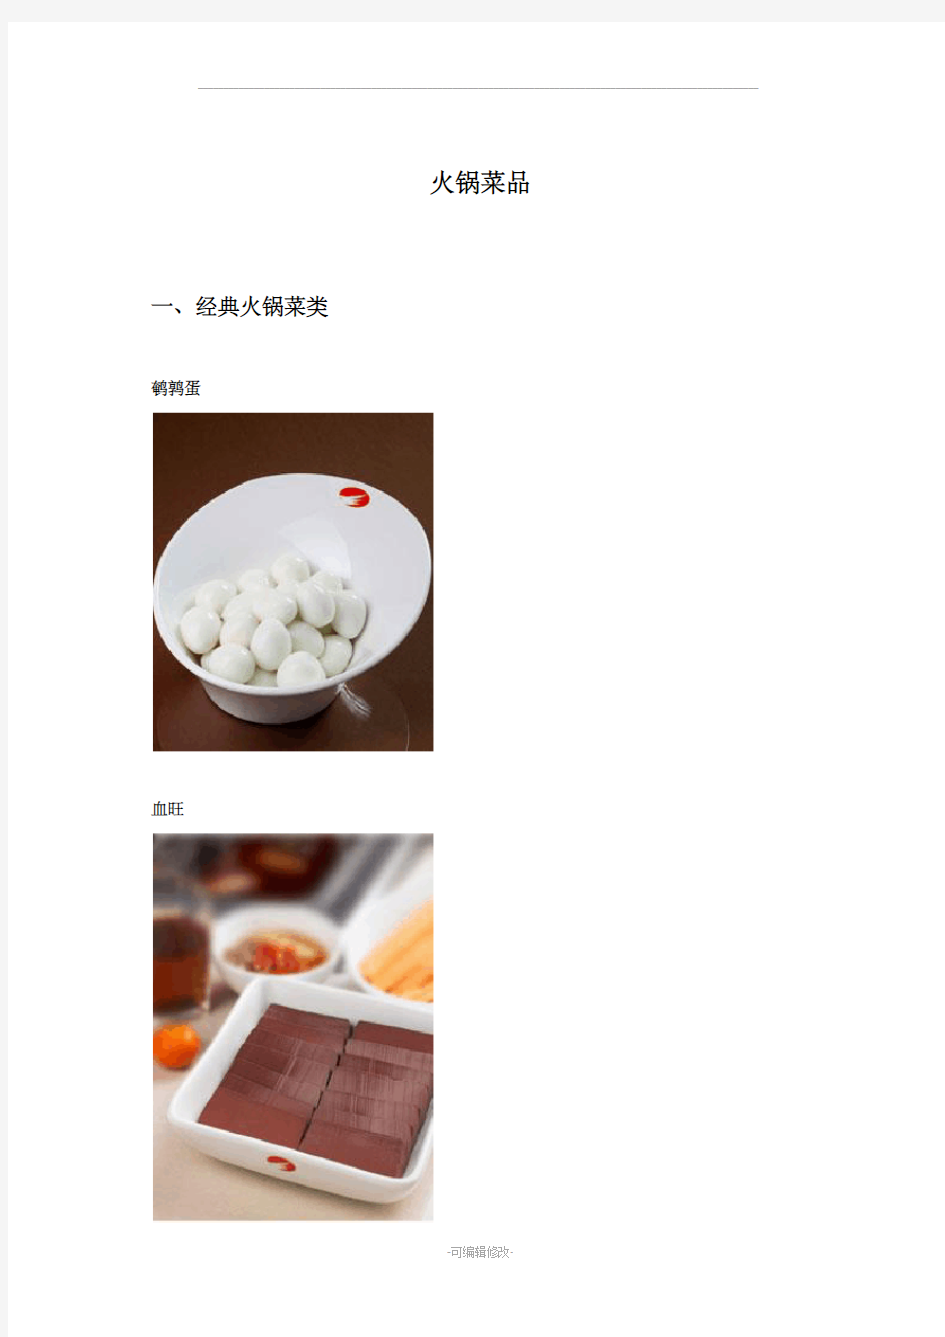 火锅经典菜品图片